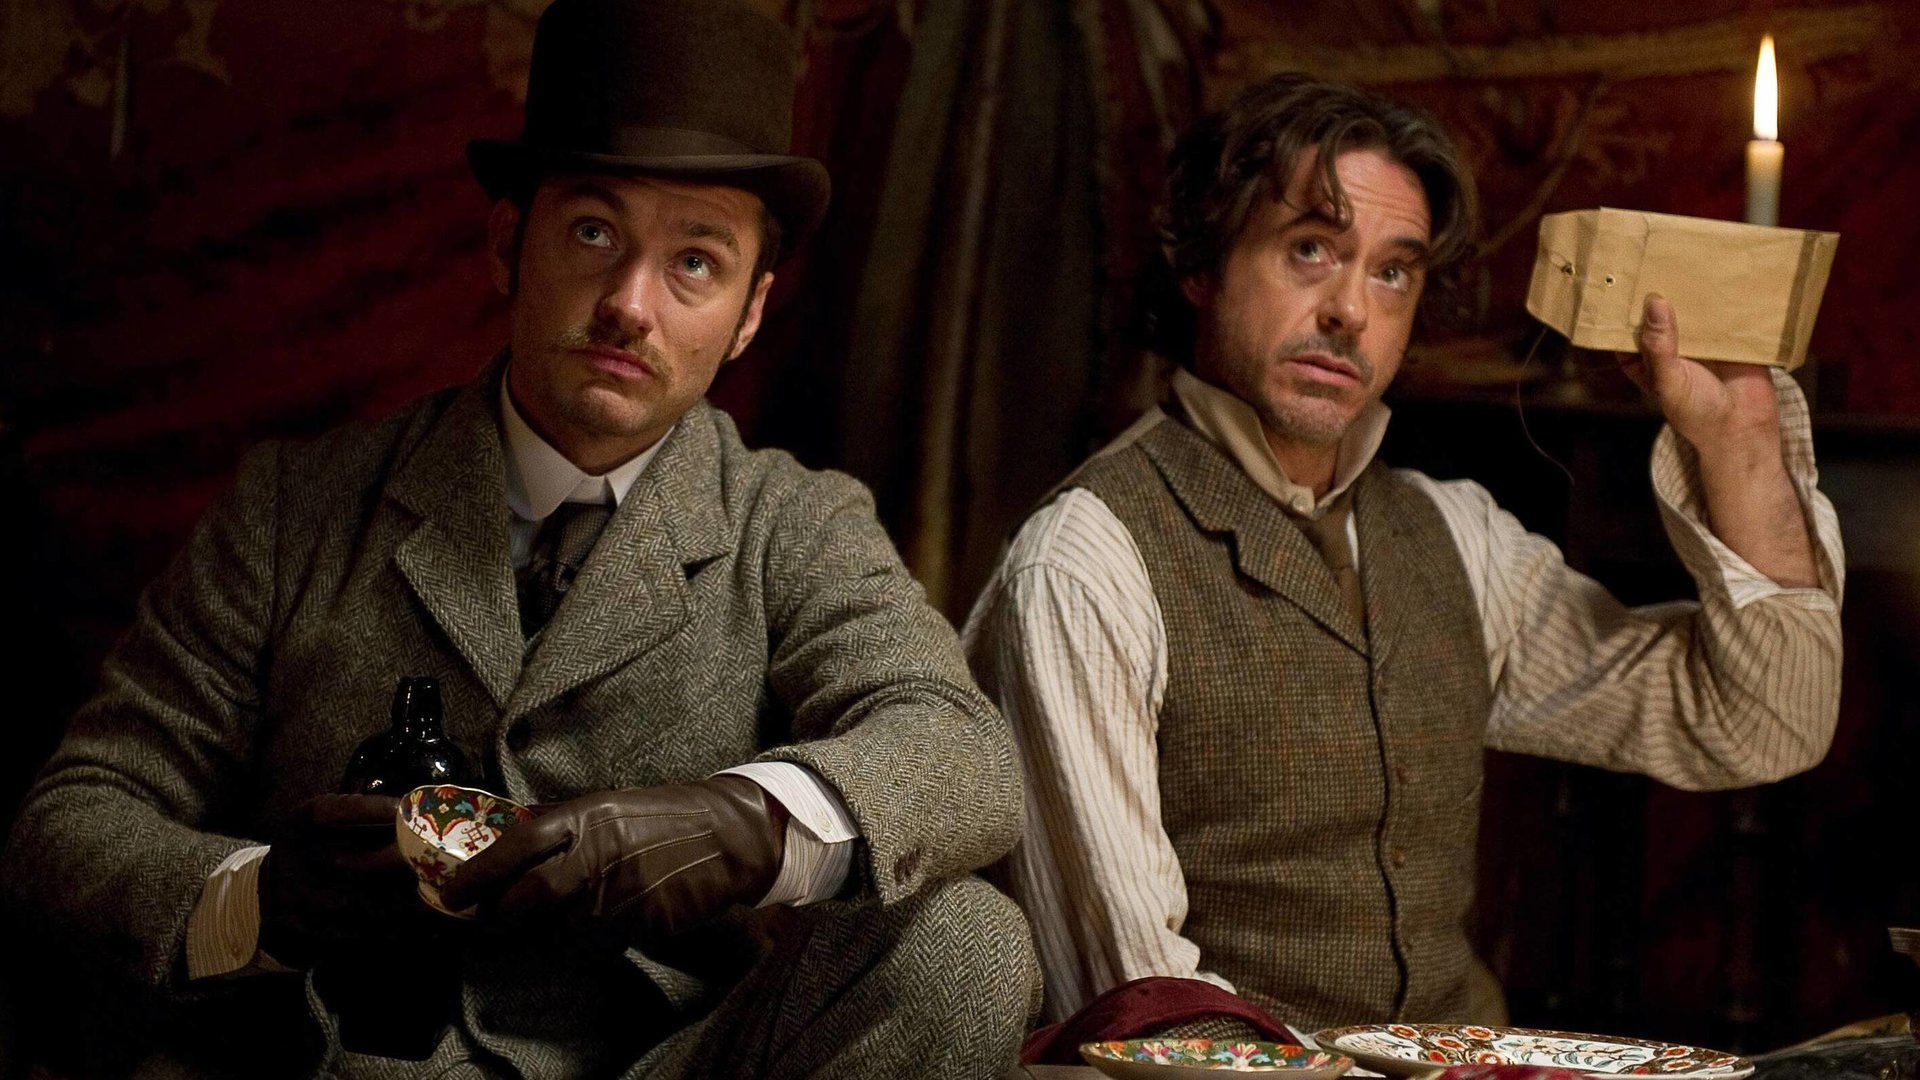 #„Sherlock Holmes“-Regisseur verrät: Zukunft der Action-Crime-Reihe hängt komplett von einer Personalie ab